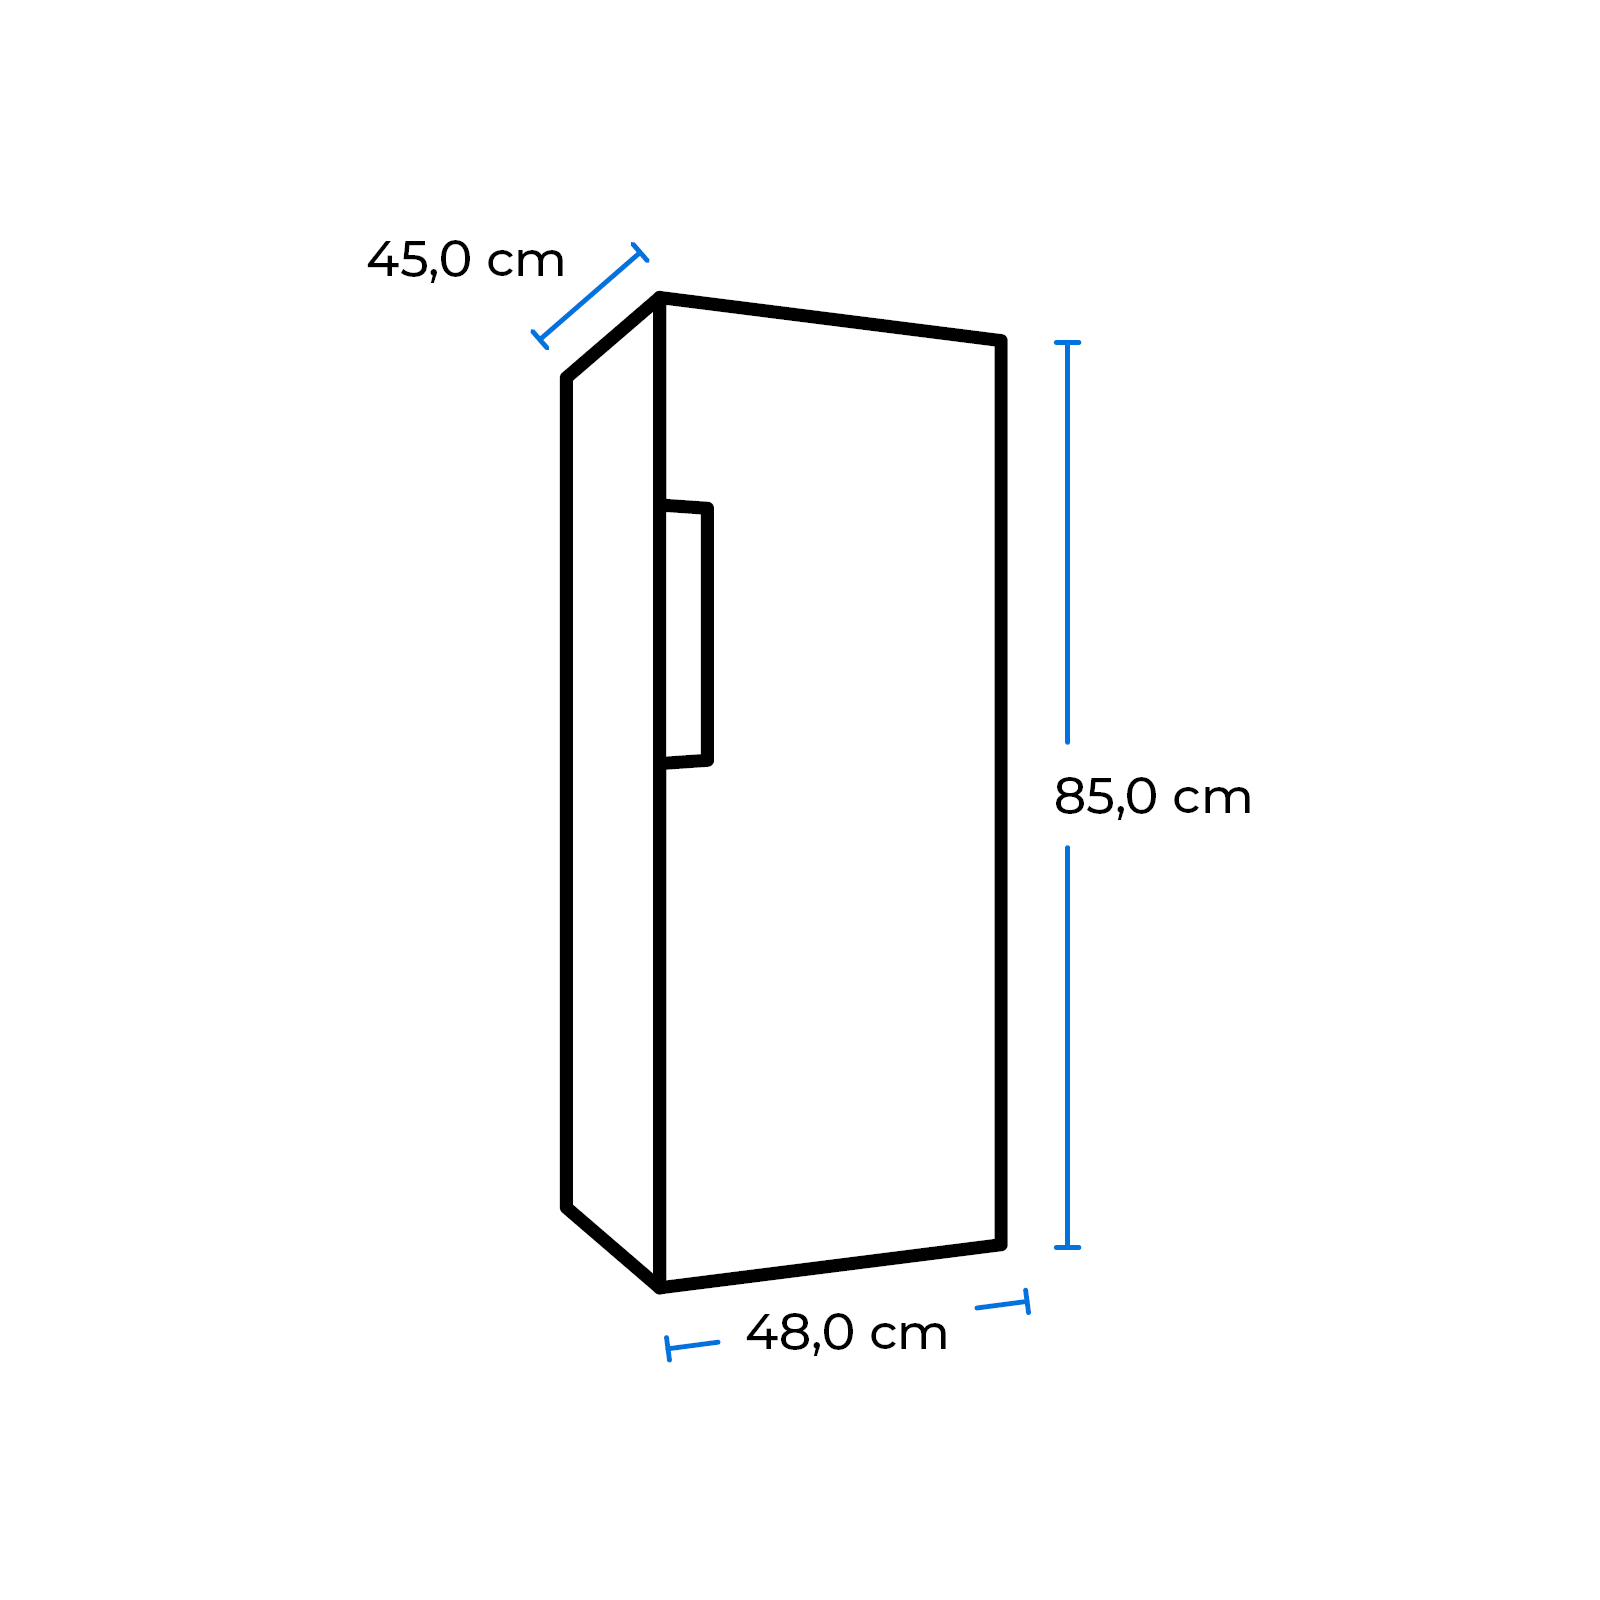 EXQUISIT KS116-0-041E weiss hoch, Weiß) mm Kühlschrank (E, 850